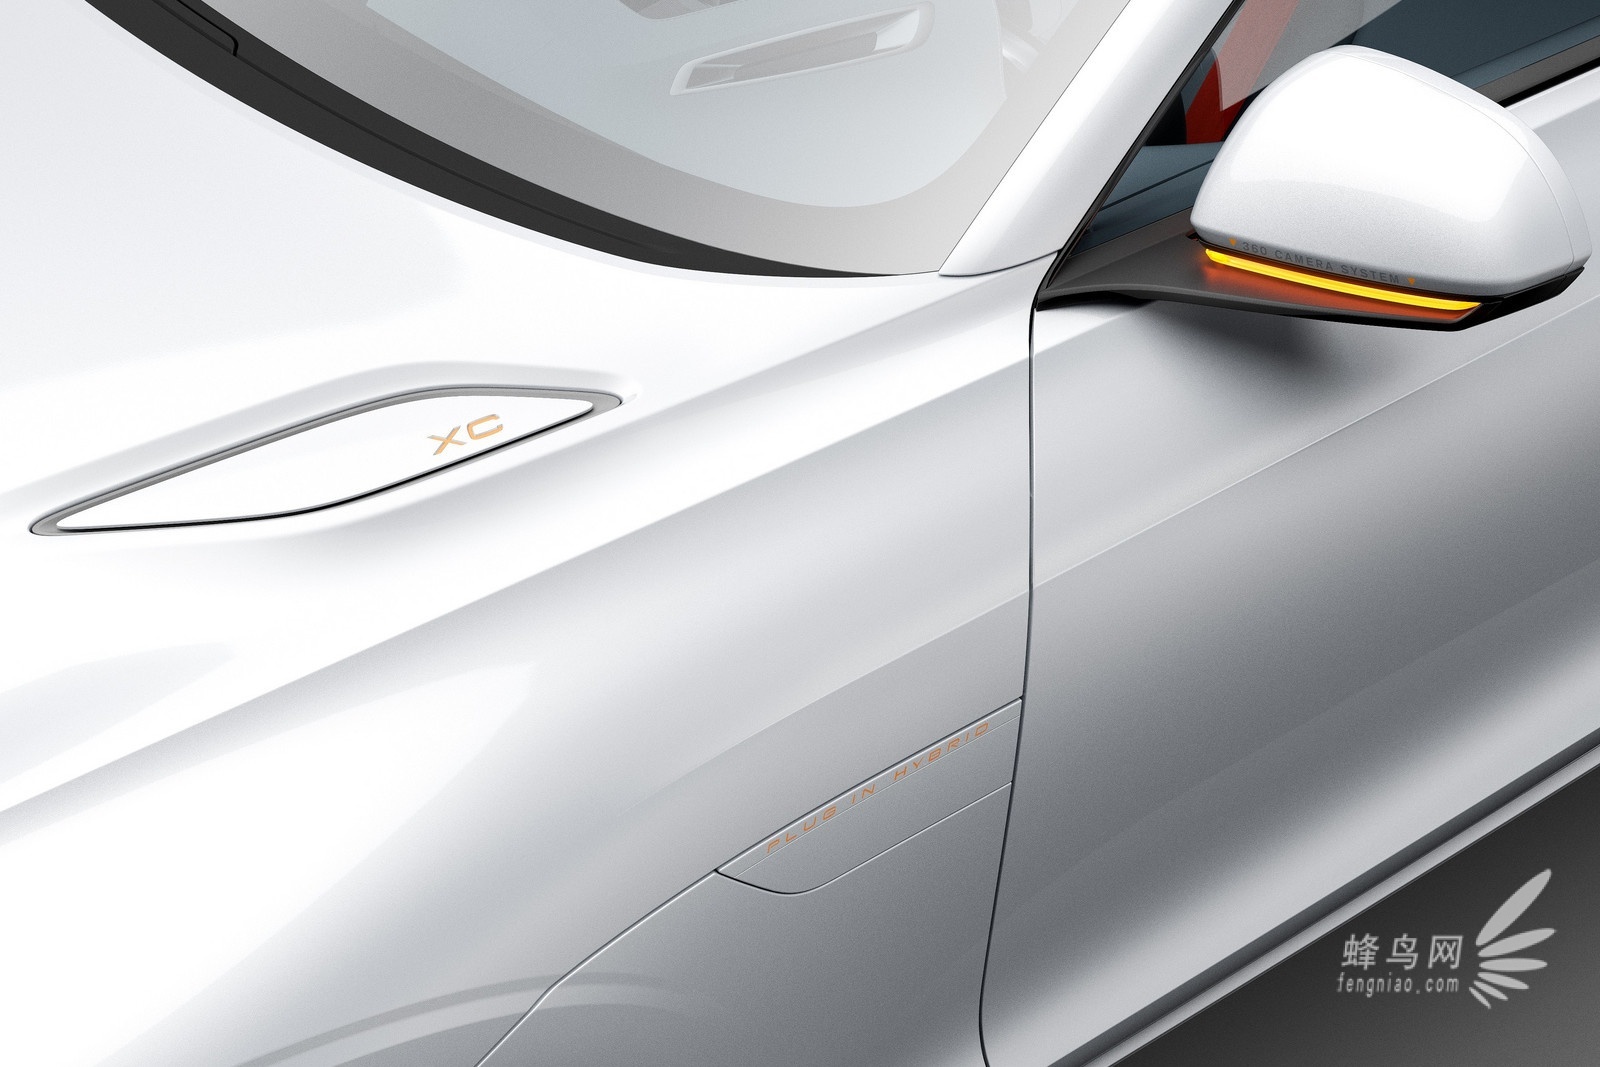 2014款沃尔沃 XC Coupé 概念车官图发布